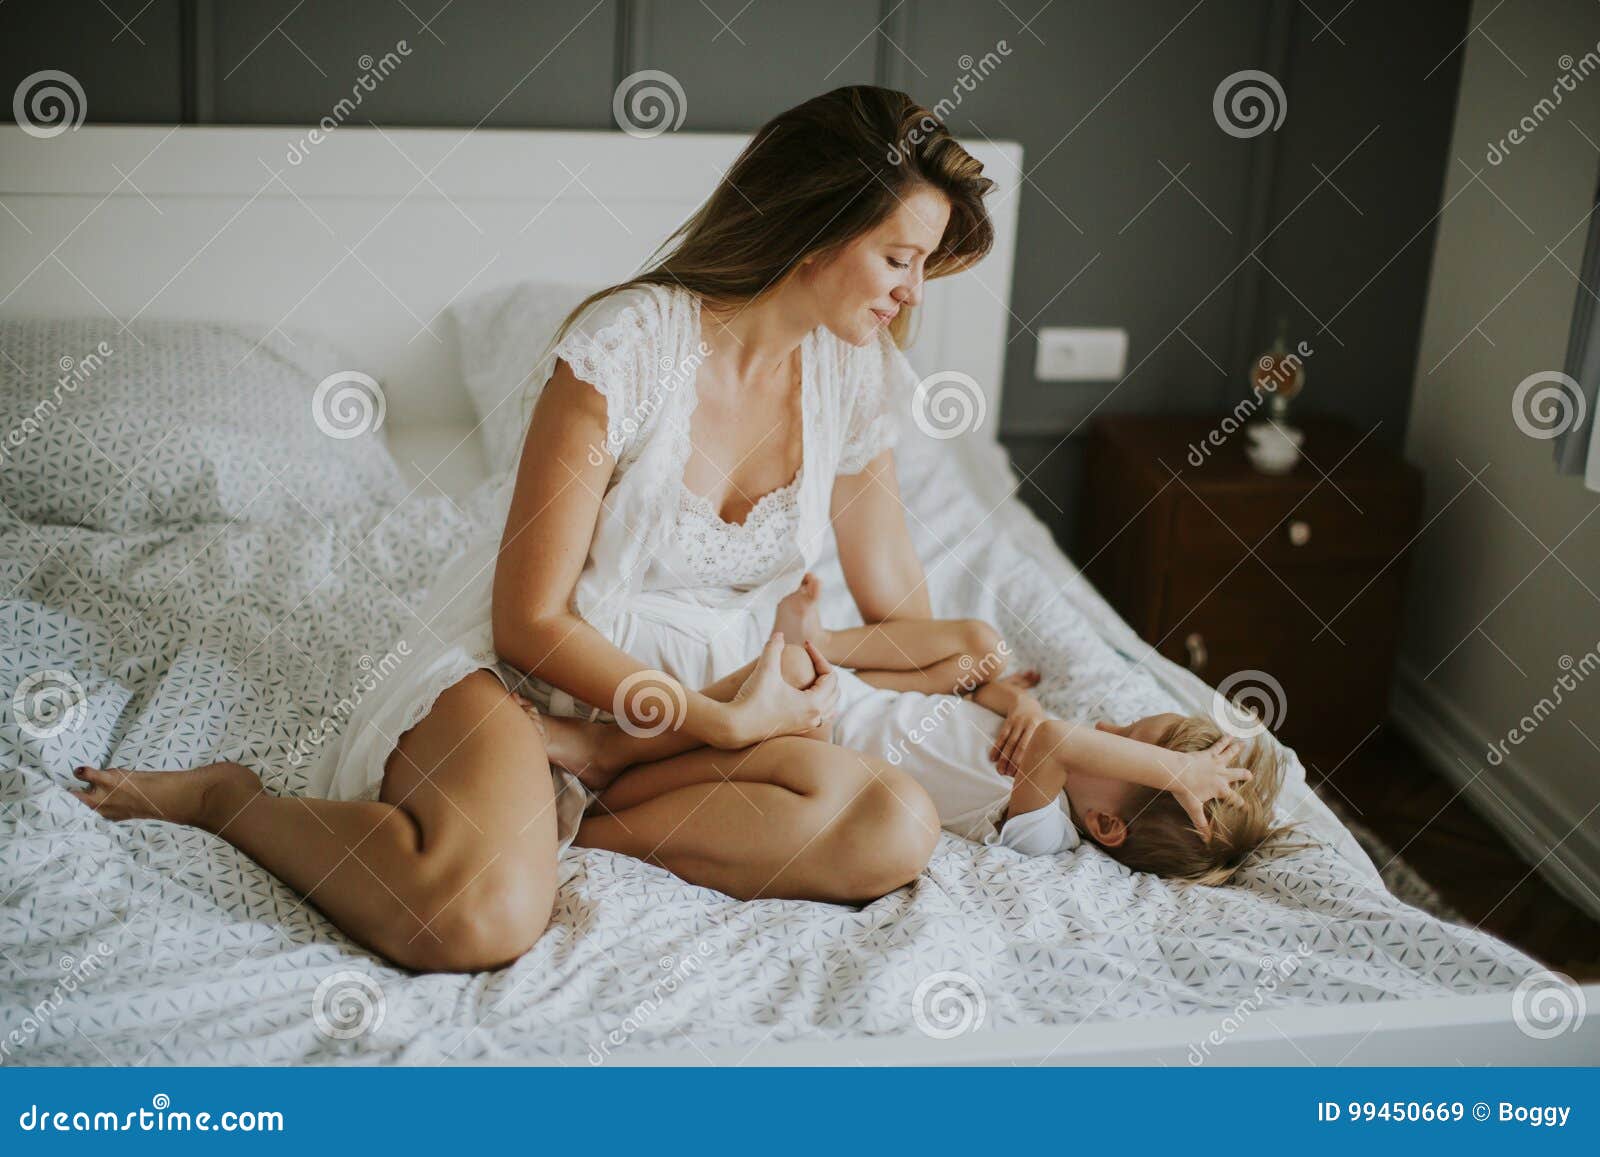 С ее мамой в постели. Молодые мамы в постели. Мать у кровати. Мамочки на кровати. Женщина и мальчик в постели.